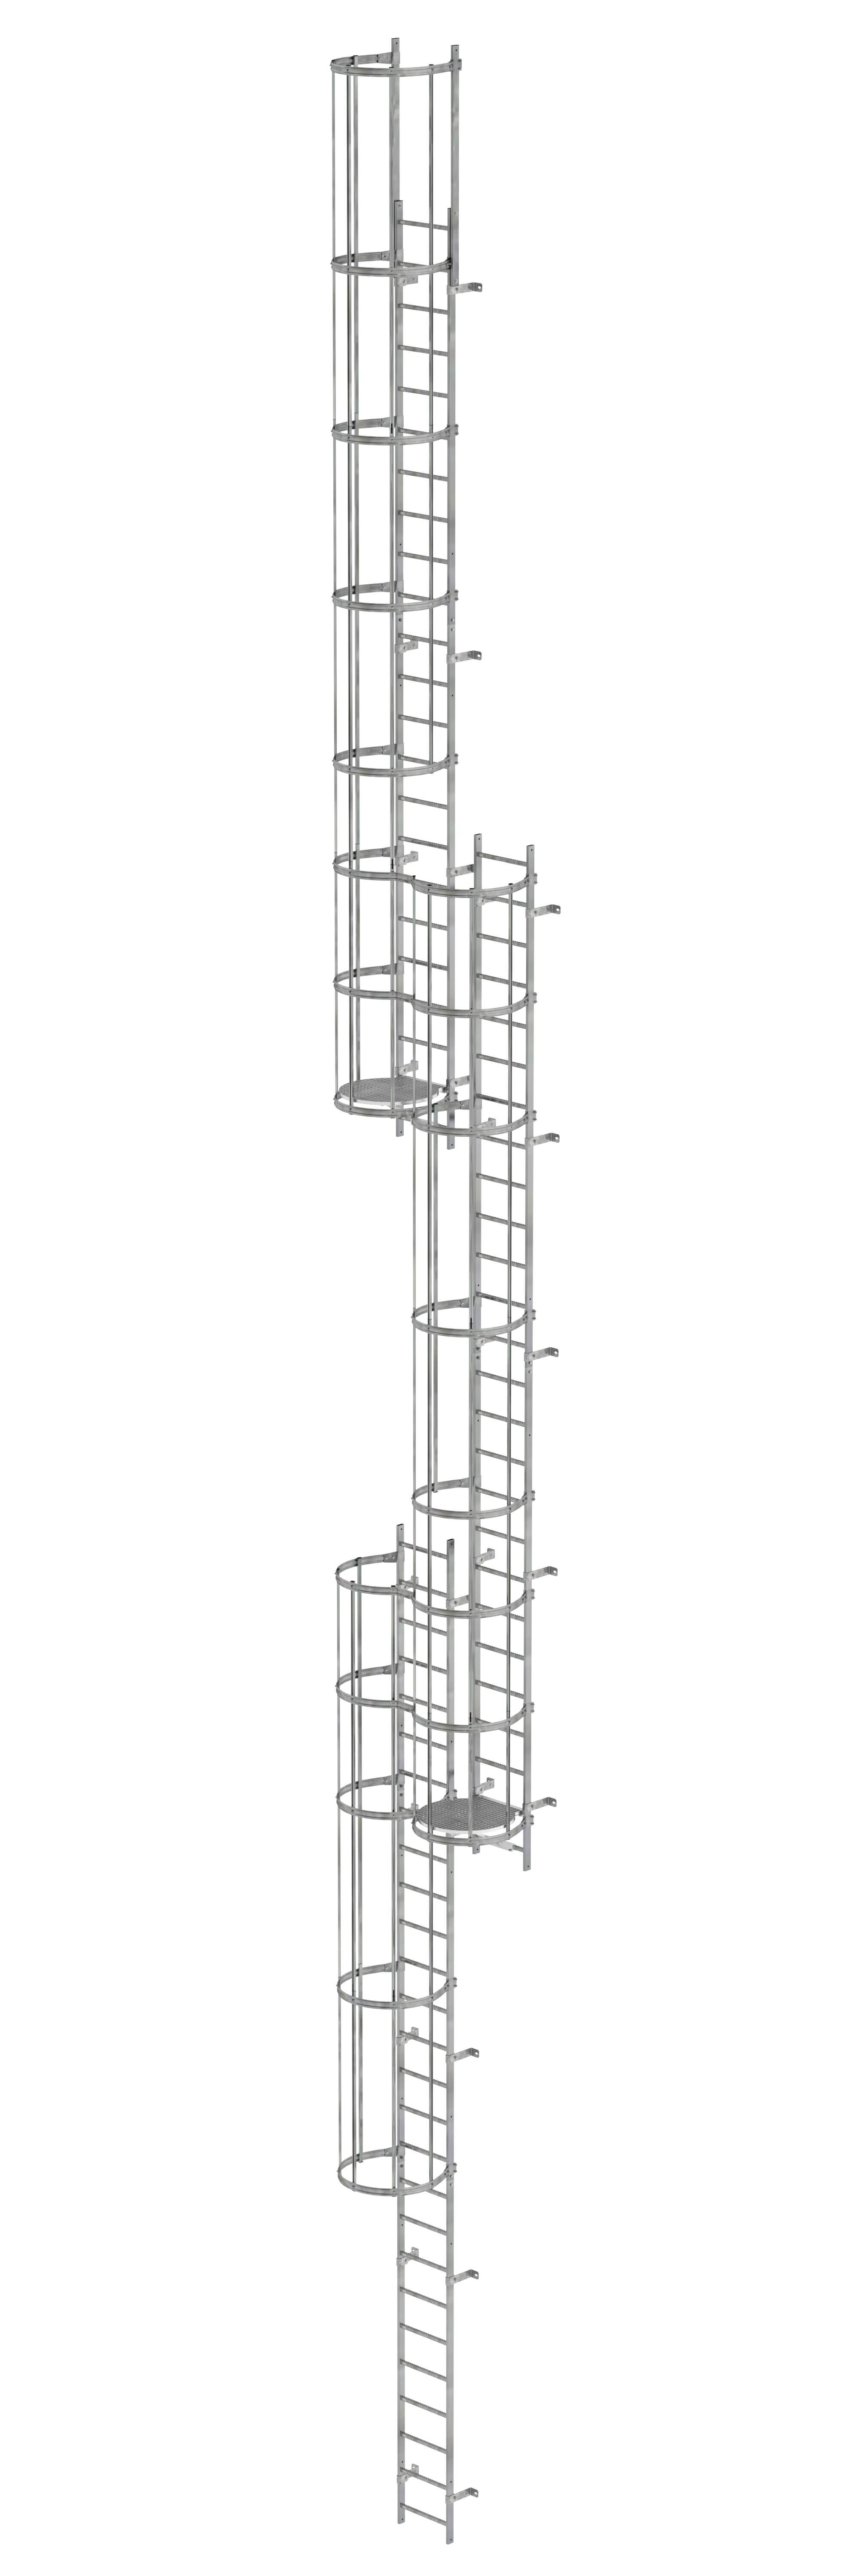 Mehrzügige Steigleiter mit Rückenschutz (Notleiter) Stahl verzinkt 18,00m